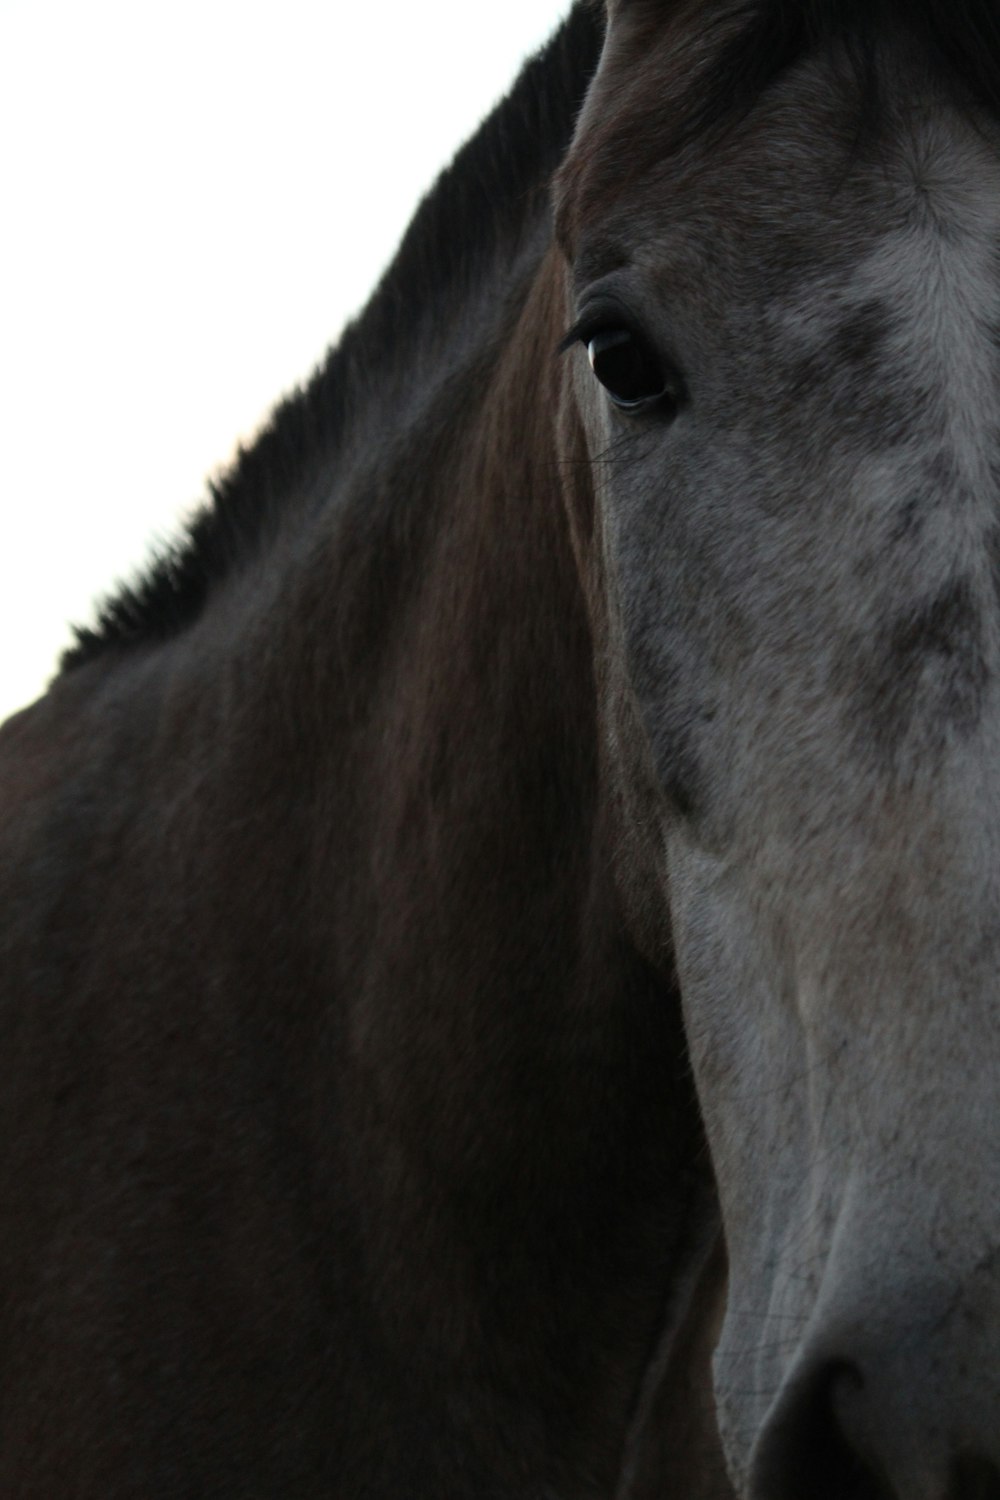 cabeça de cavalo marrom e branca